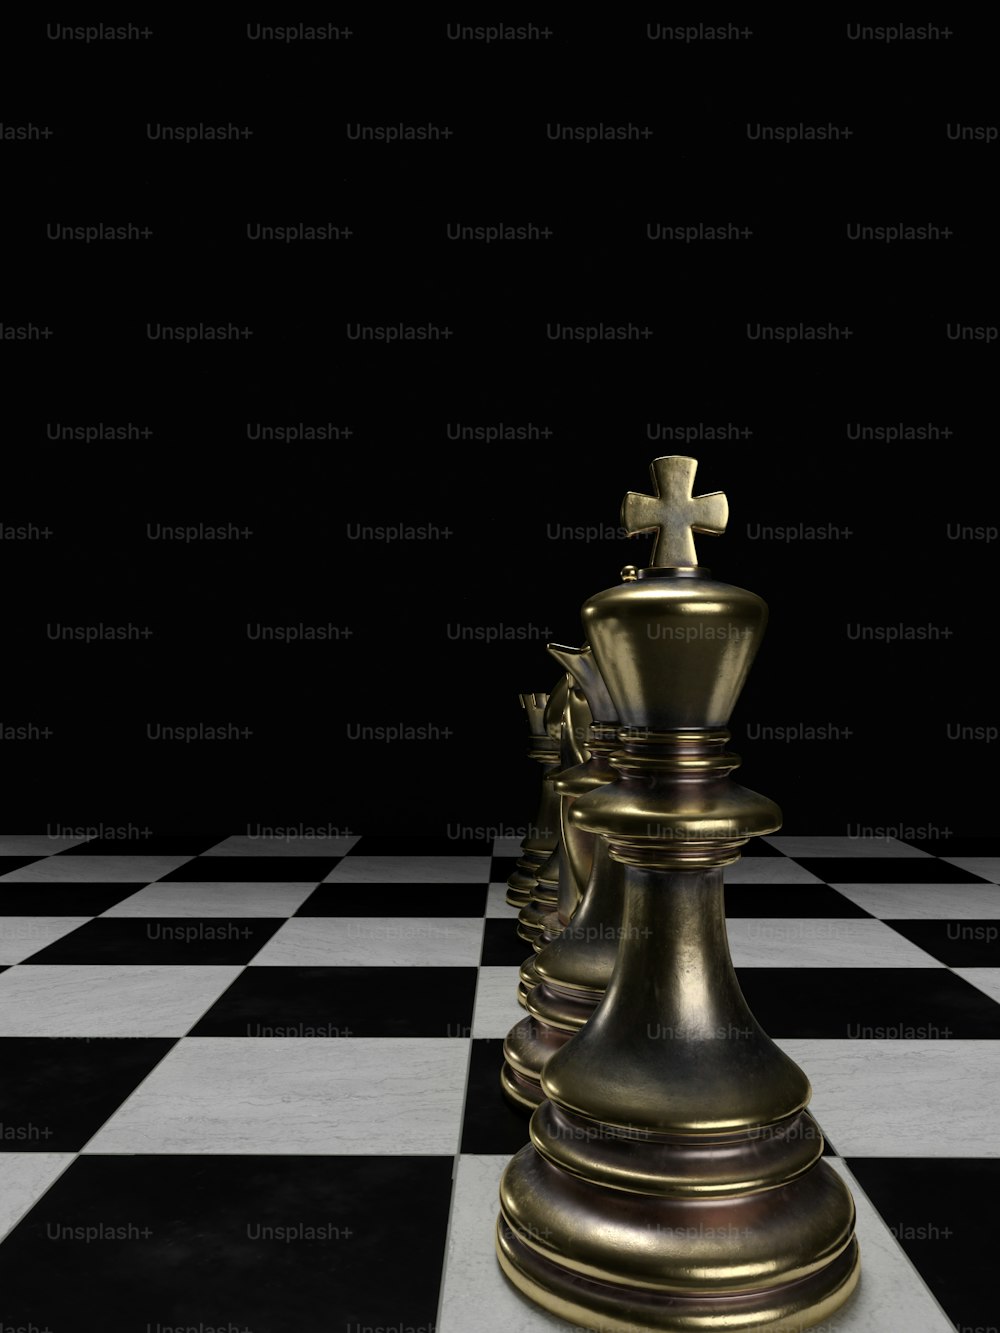 Una pieza de ajedrez dorada en un suelo a cuadros en blanco y negro